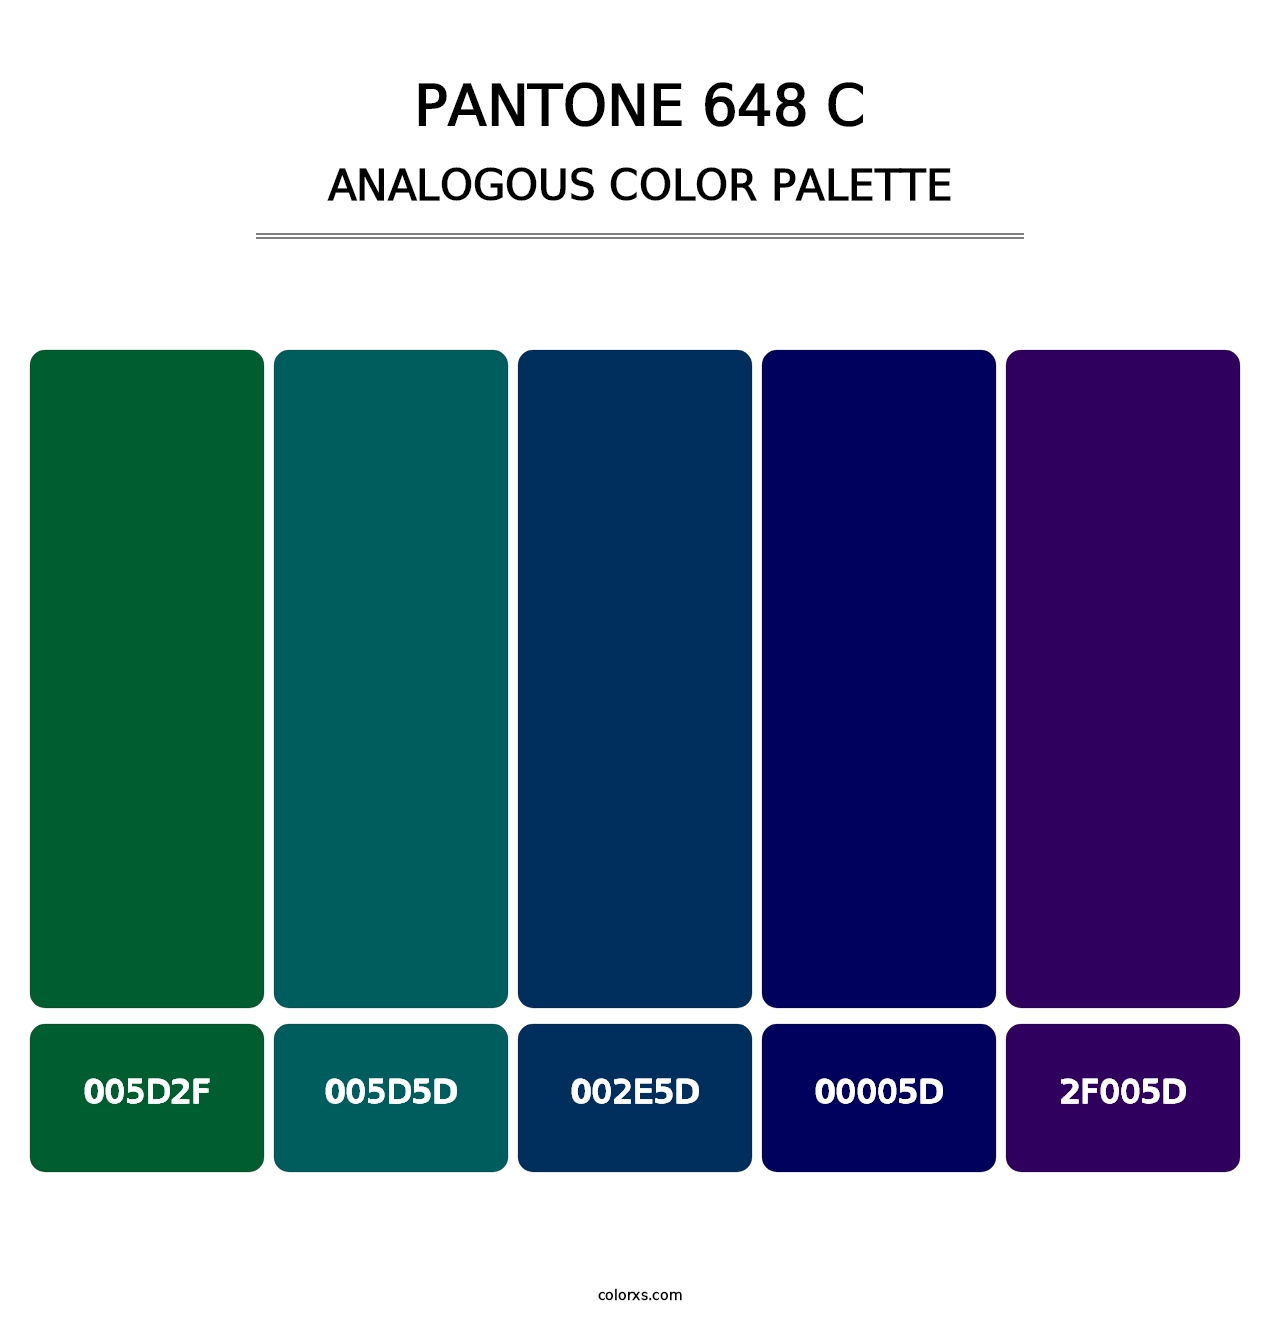 PANTONE 648 C - Analogous Color Palette